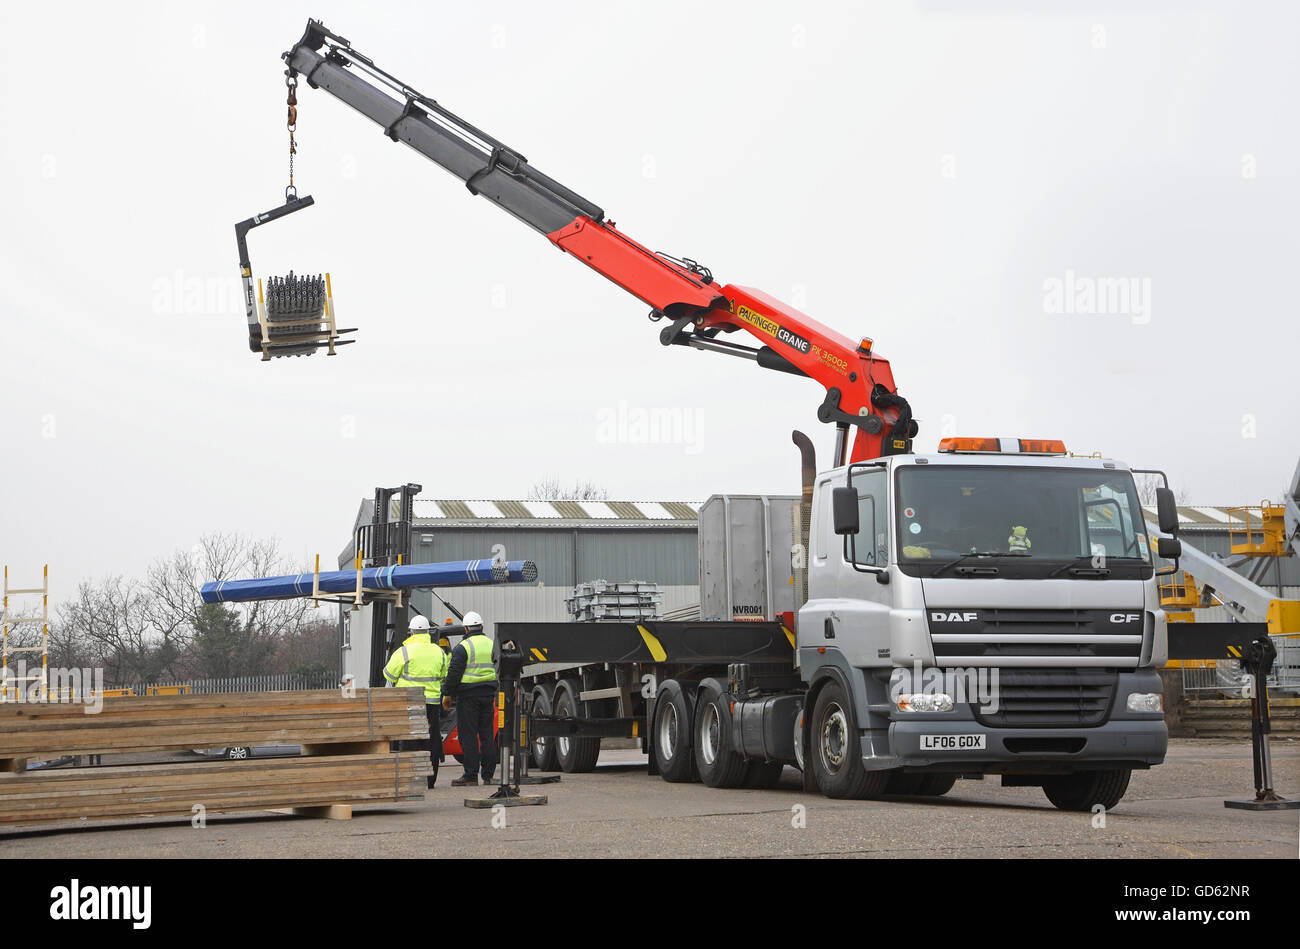 Una cabina-montato Hiab gru e un carrello elevatore a forche sono usati per scaricare la costruzione in acciaio prodotti in una dimostrazione di caricamento in condizioni di sicurezza Foto Stock